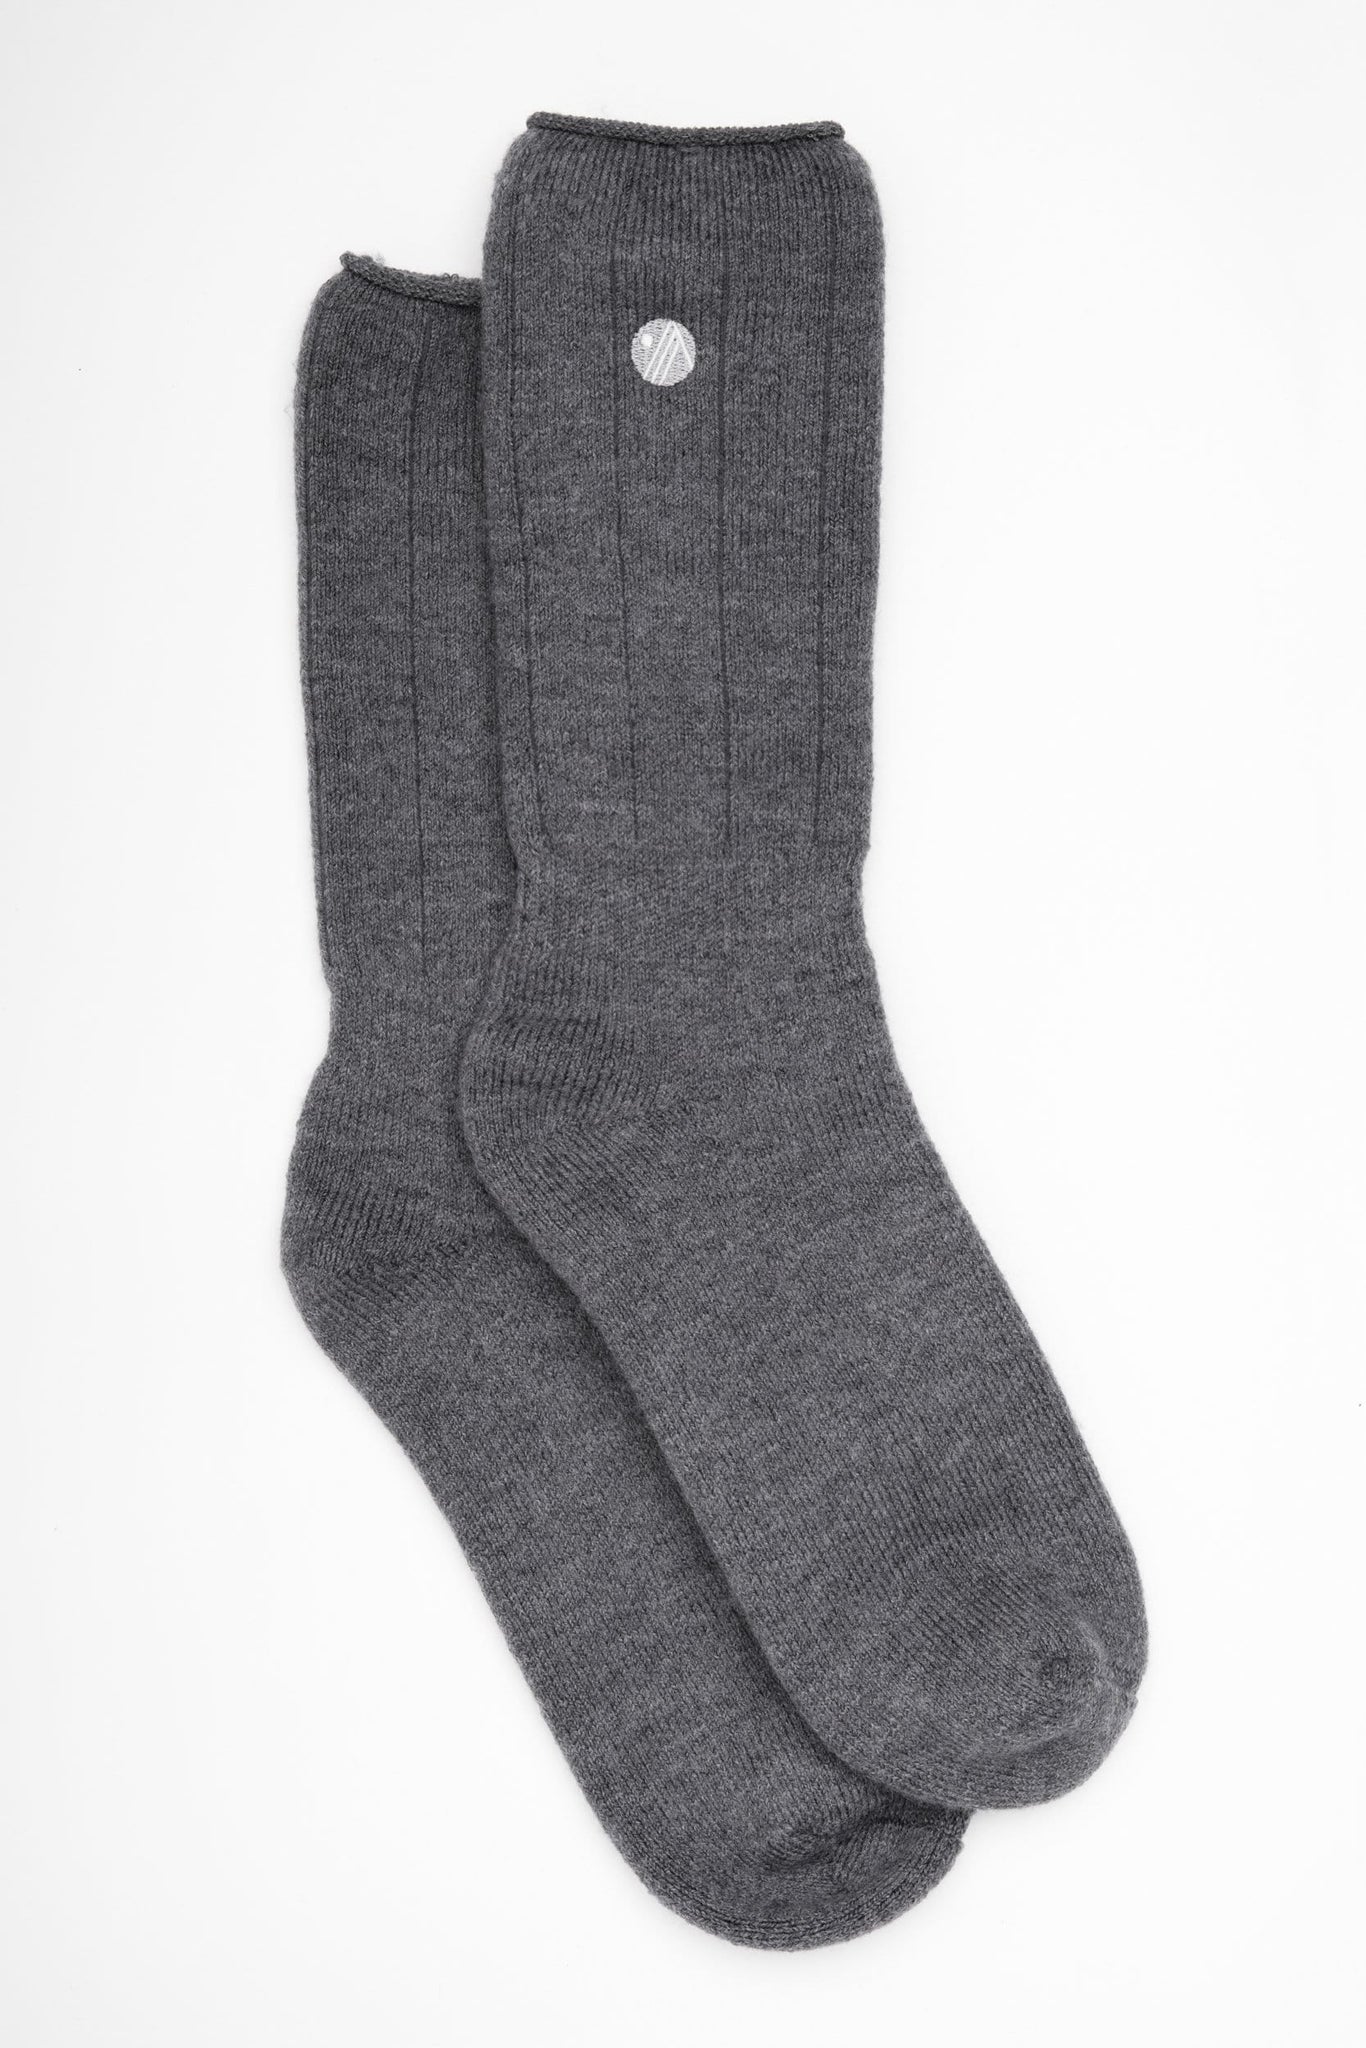 Merino Wool Hiking Socks - Charcoal Socks  